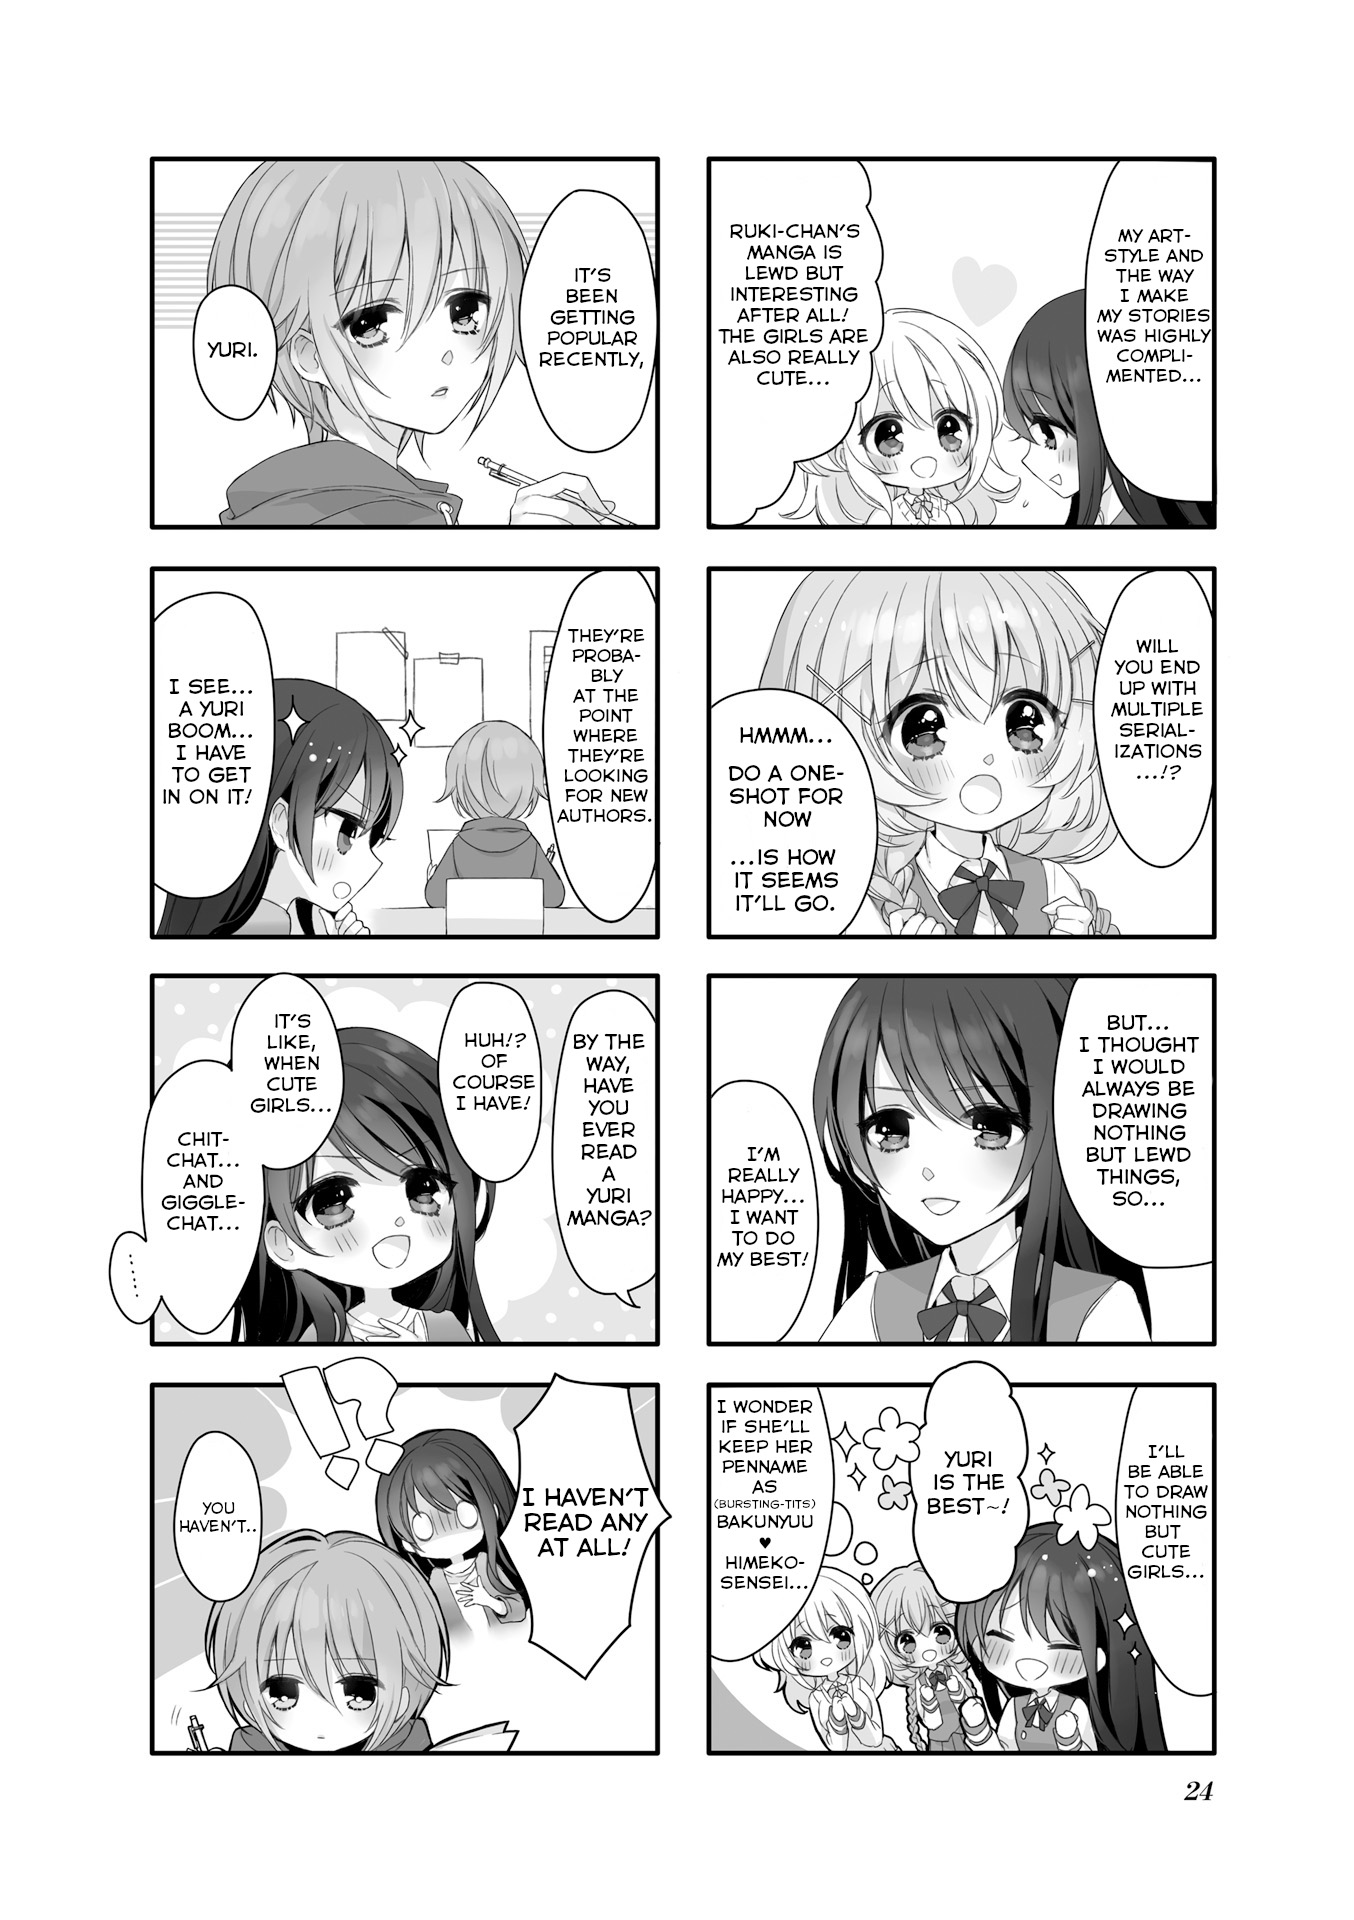 Comic Girls Anthology Vol.1 Chapter 3: Yuri Manga Challenge! - Picture 2